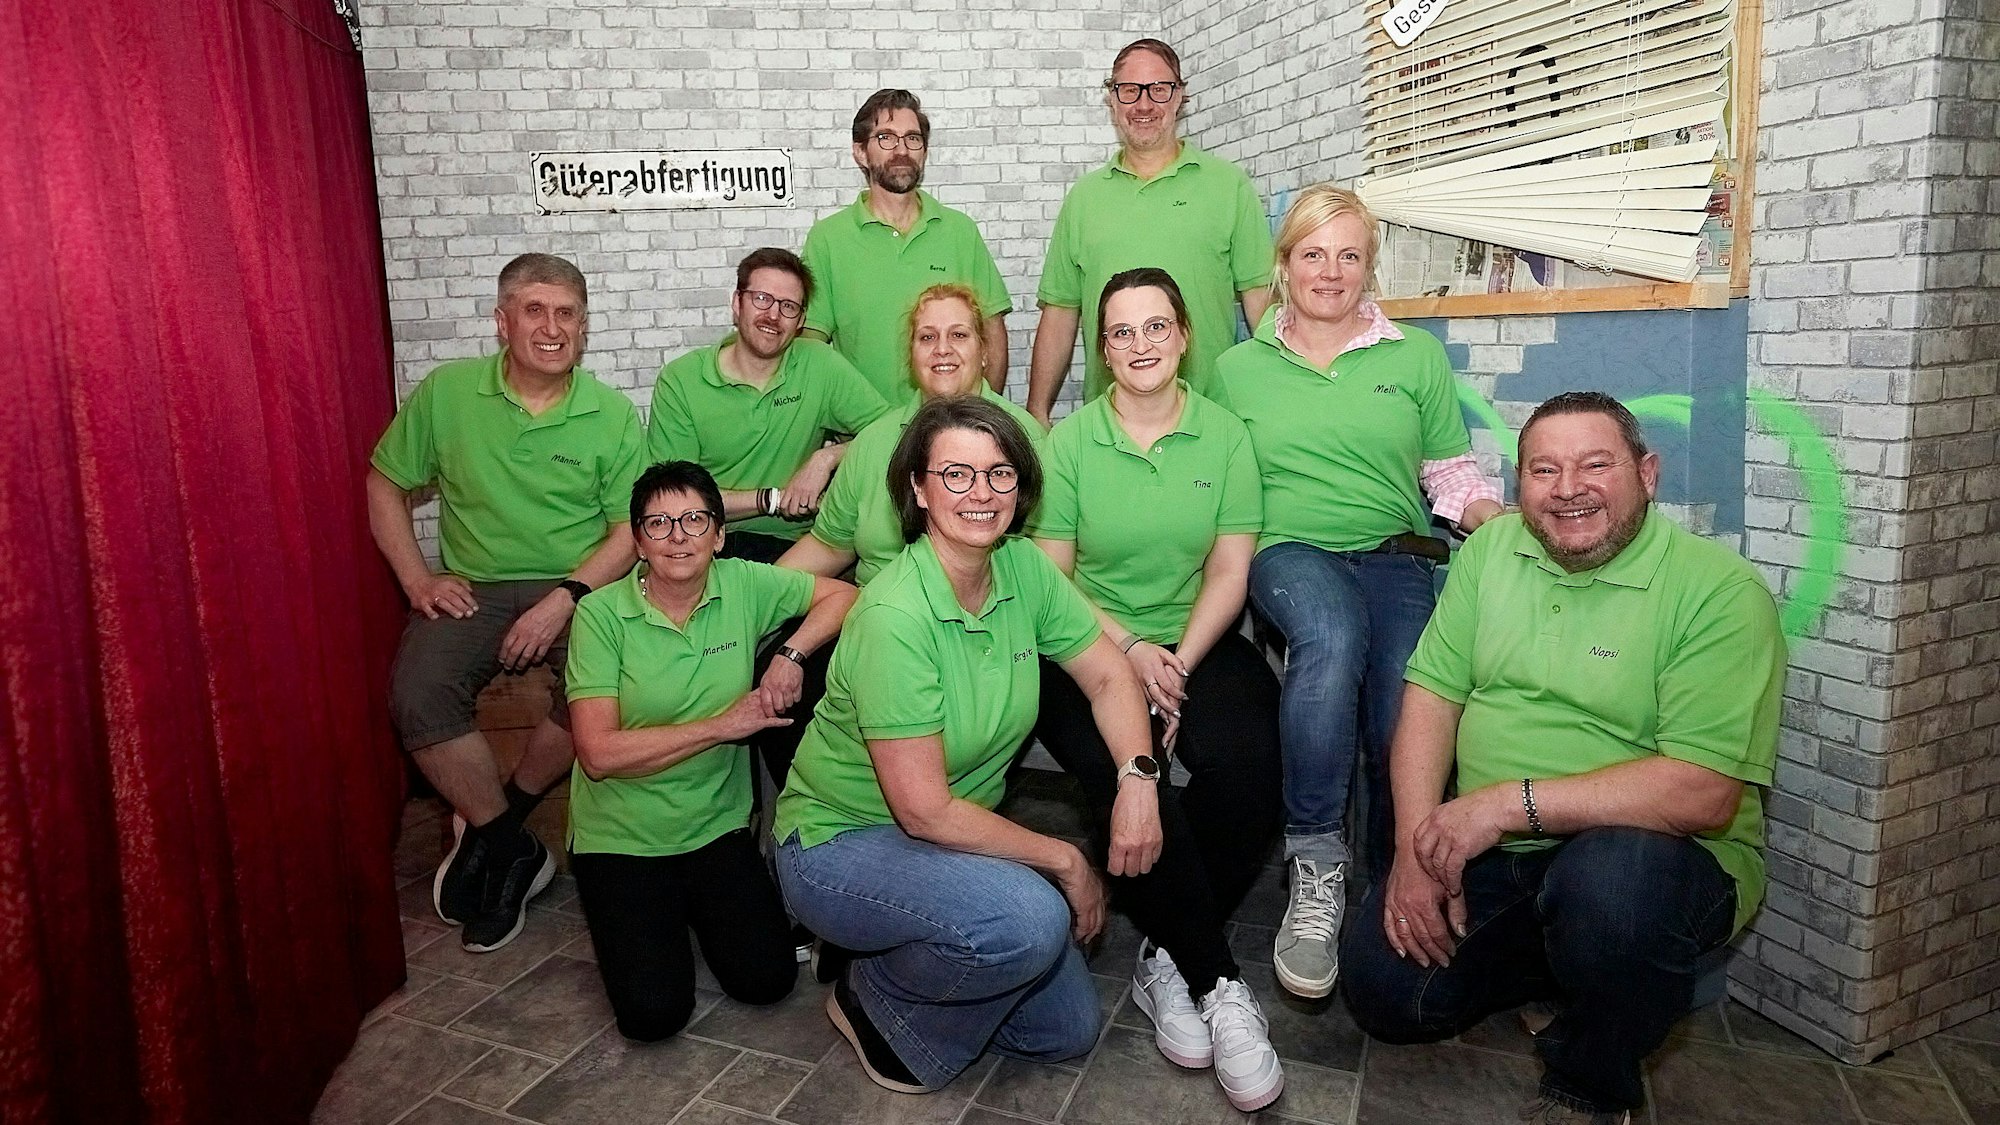 Einige Frauen und Männer sind in grünen T-Shirts in einer Theaterkulisse zu sehen. Sie gehören zur Kleinen Theaterschar Kronenburg und bereiten sich auf ihre Aufführung vor.